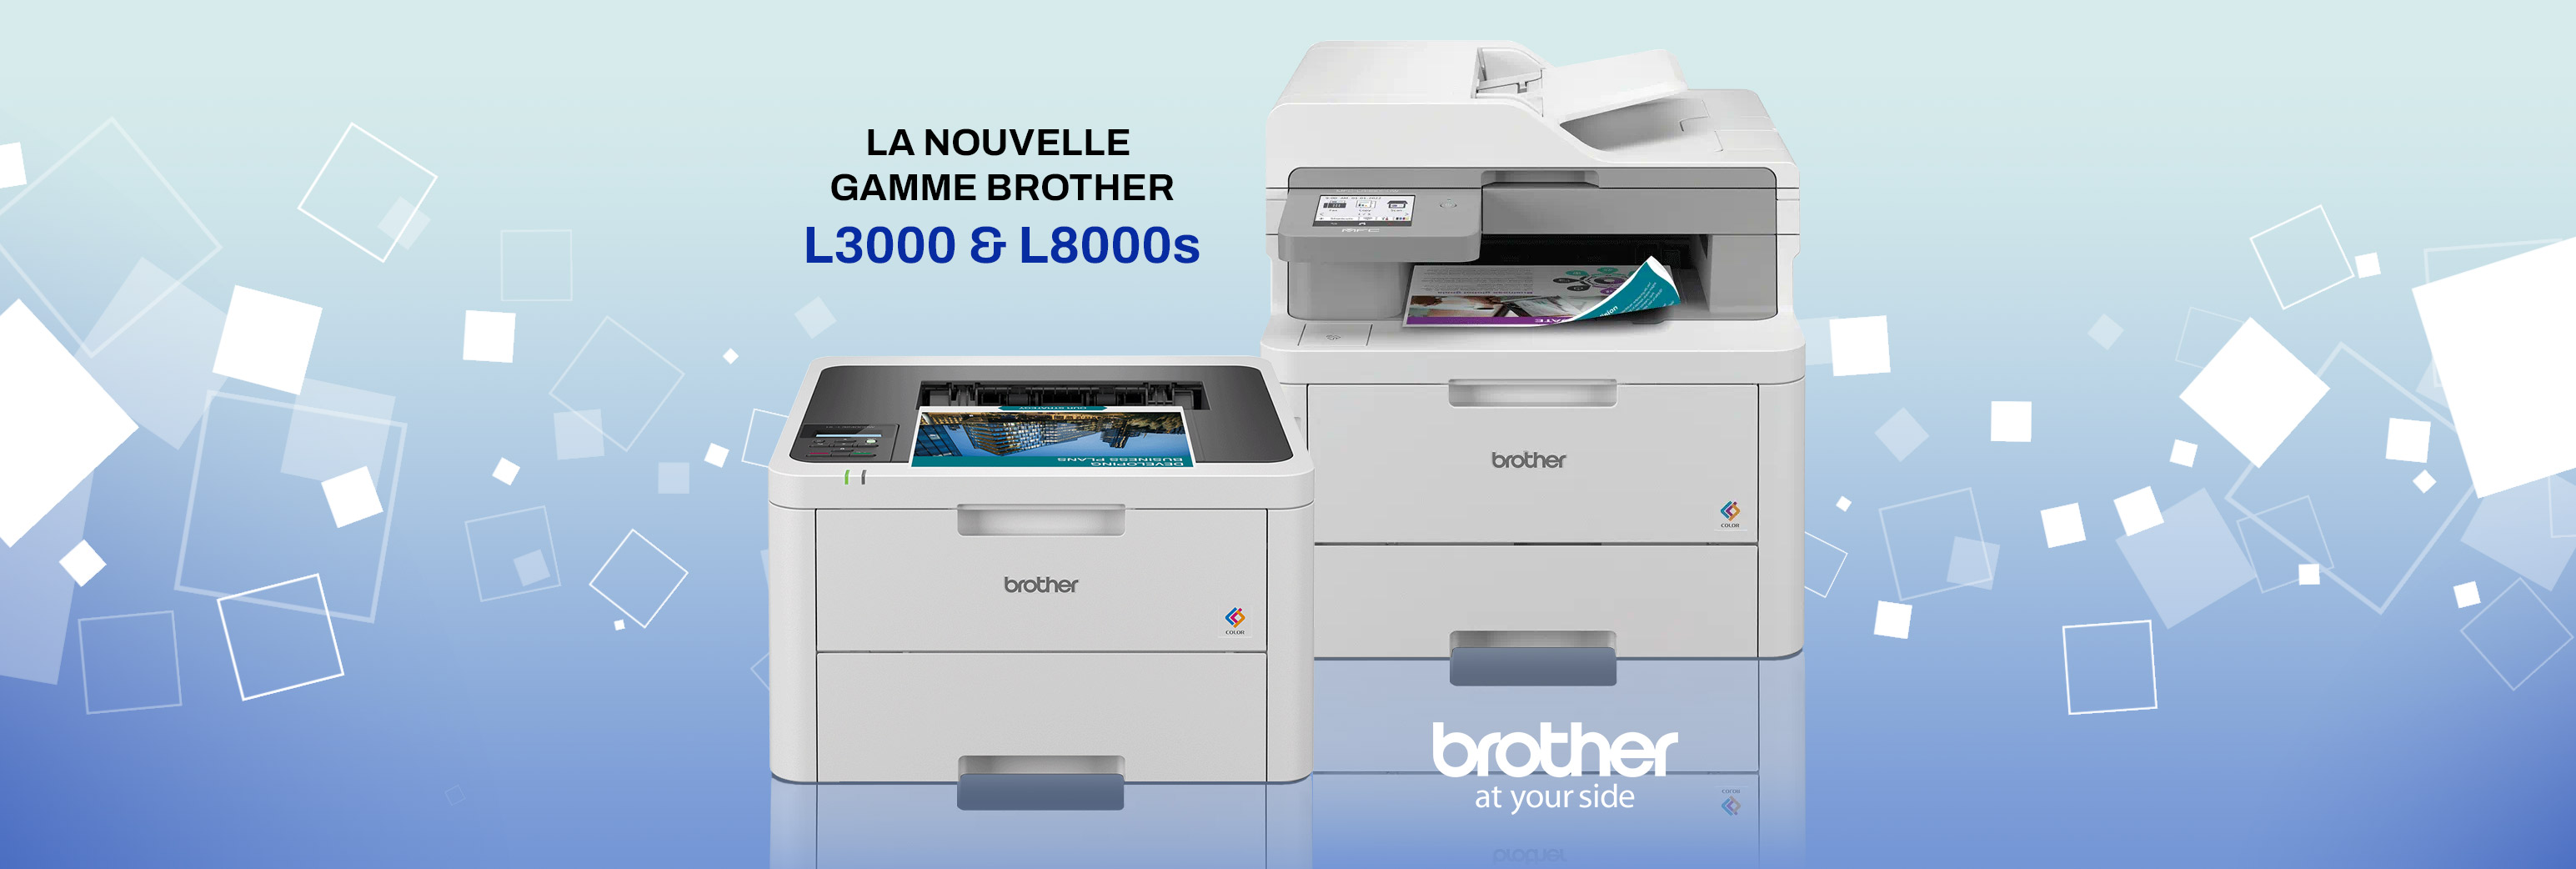 Découvrez la nouvelle gamme Brother L3000 & L8000s